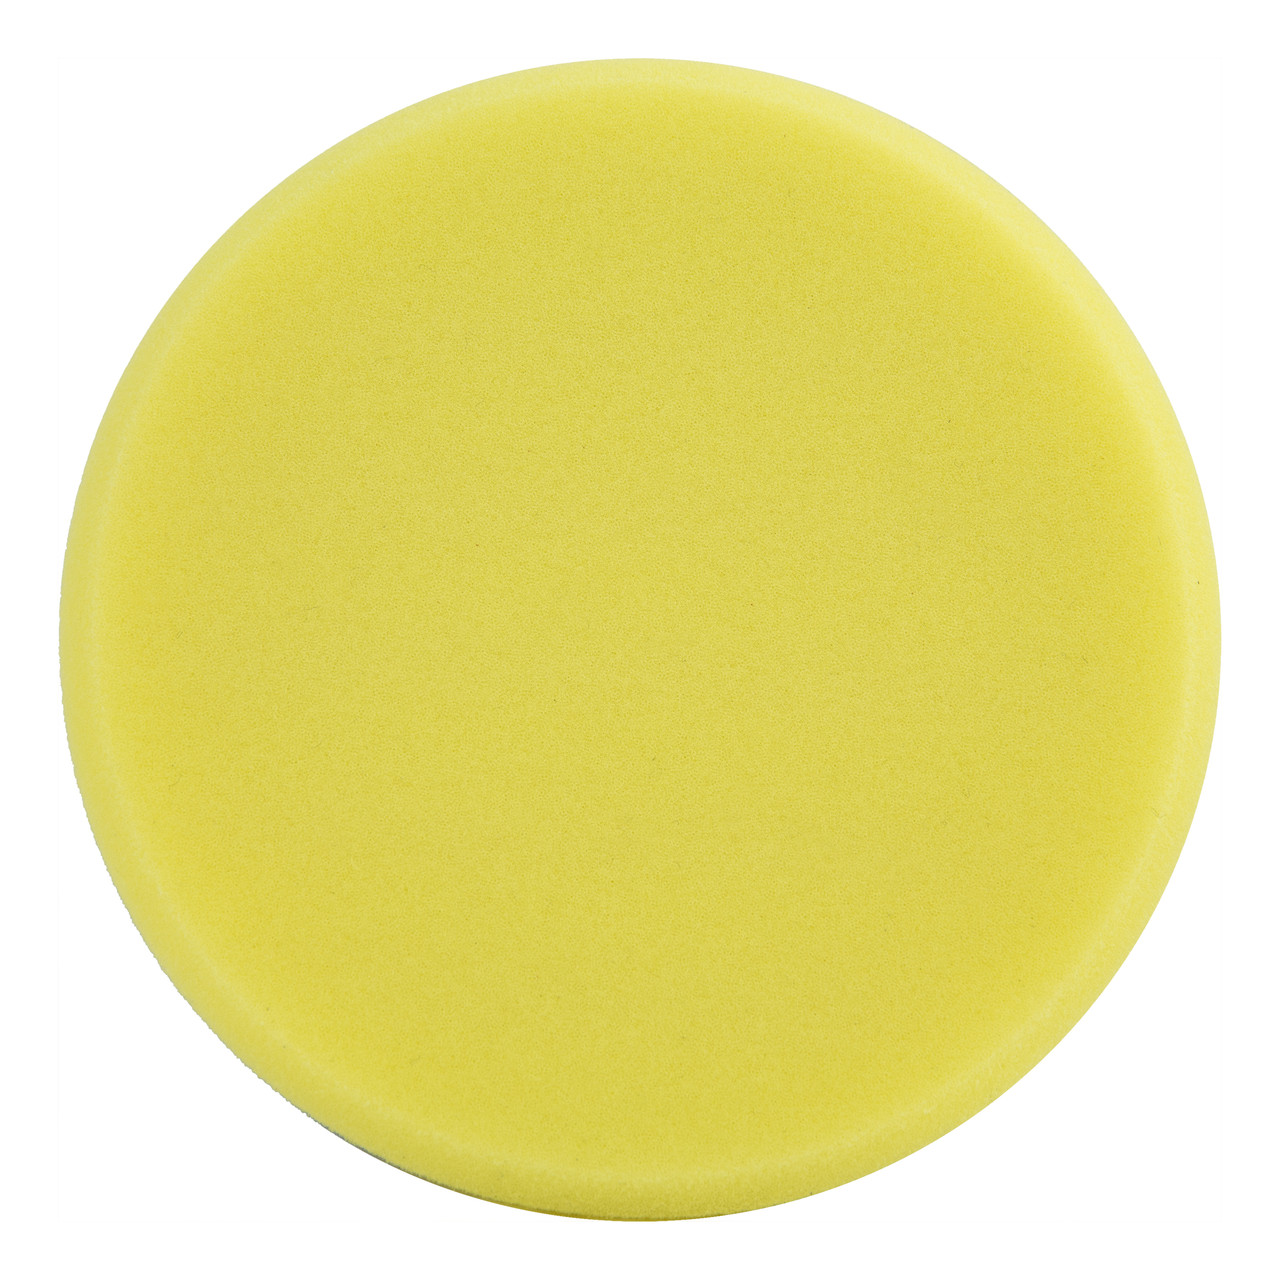 Полировальный круг средней жесткости - Meguiar's DA Soft Buff Foam Polishing Pad 140 мм. желтый (DFP5)